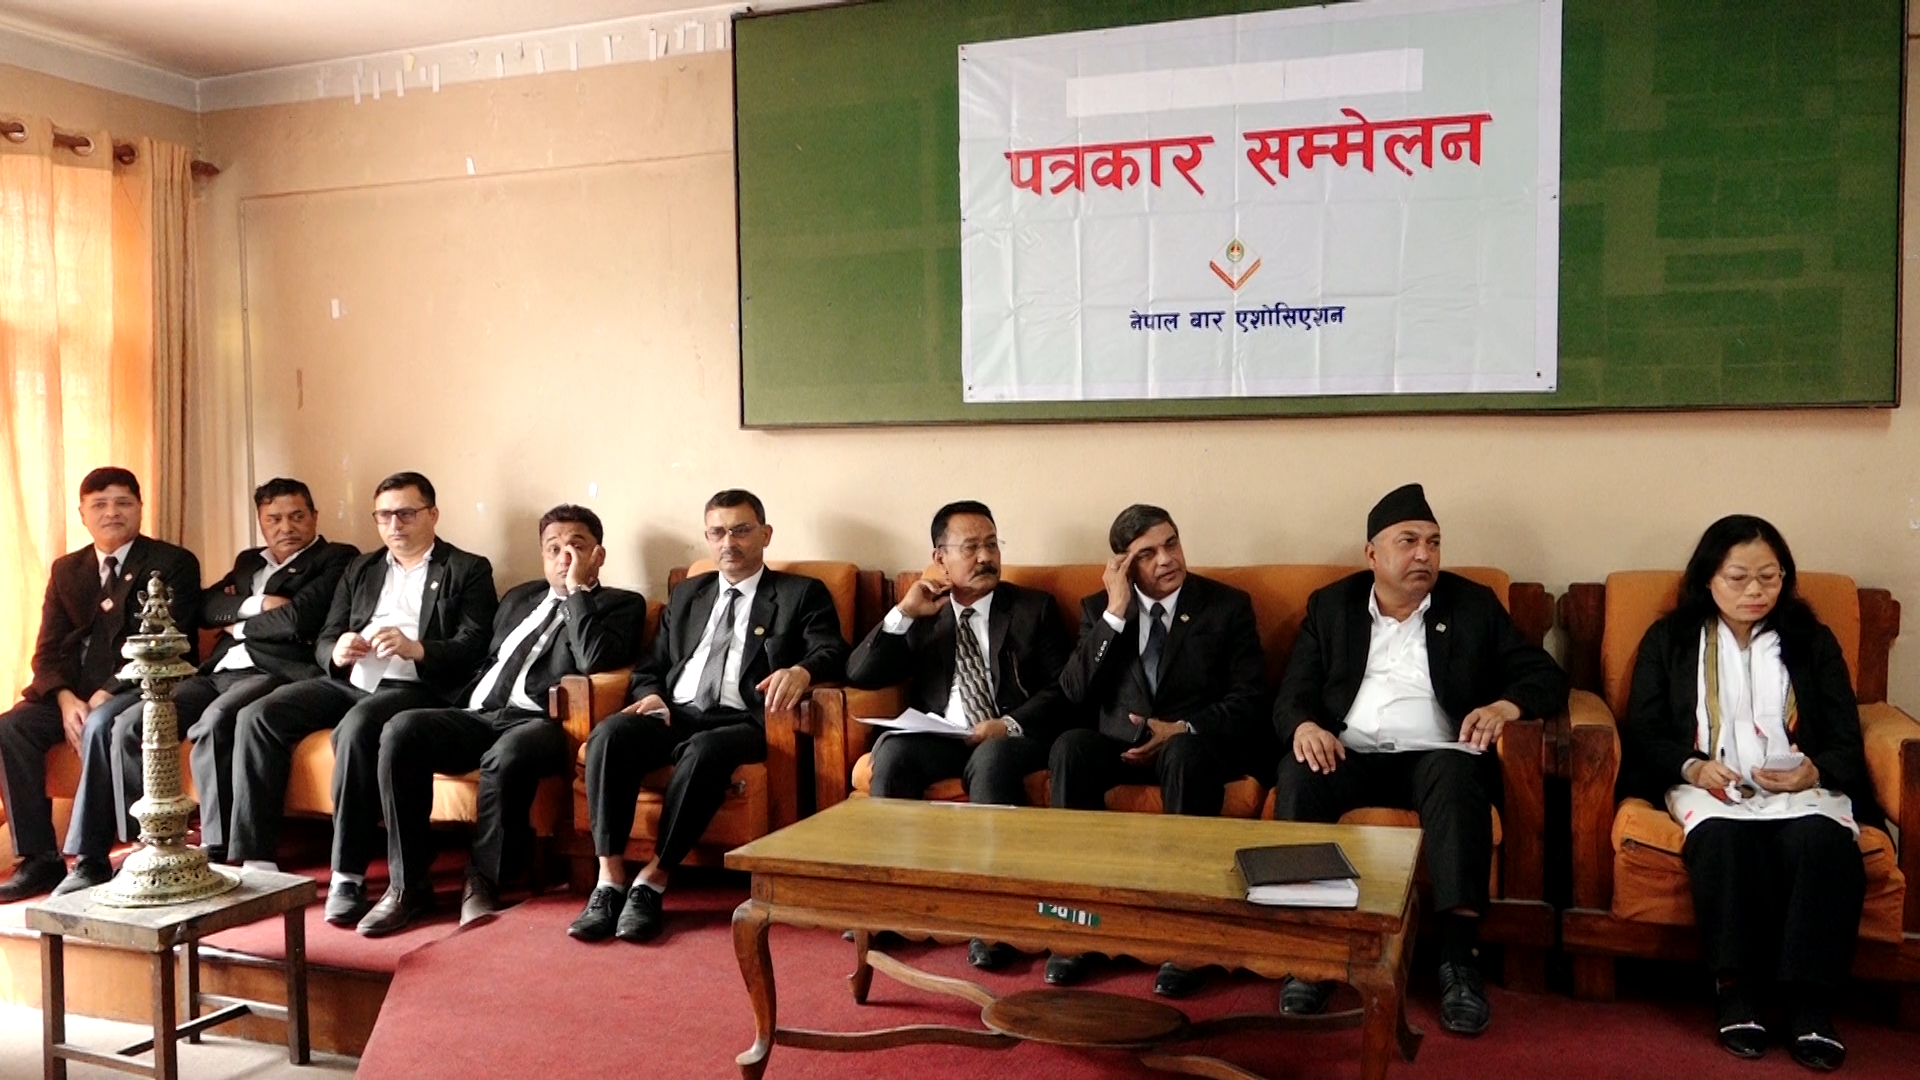 नेपाल बारद्वारा न्यायालय पुनर्संरचनाका लागि नौ सदस्यीय सुझाव समिति गठन